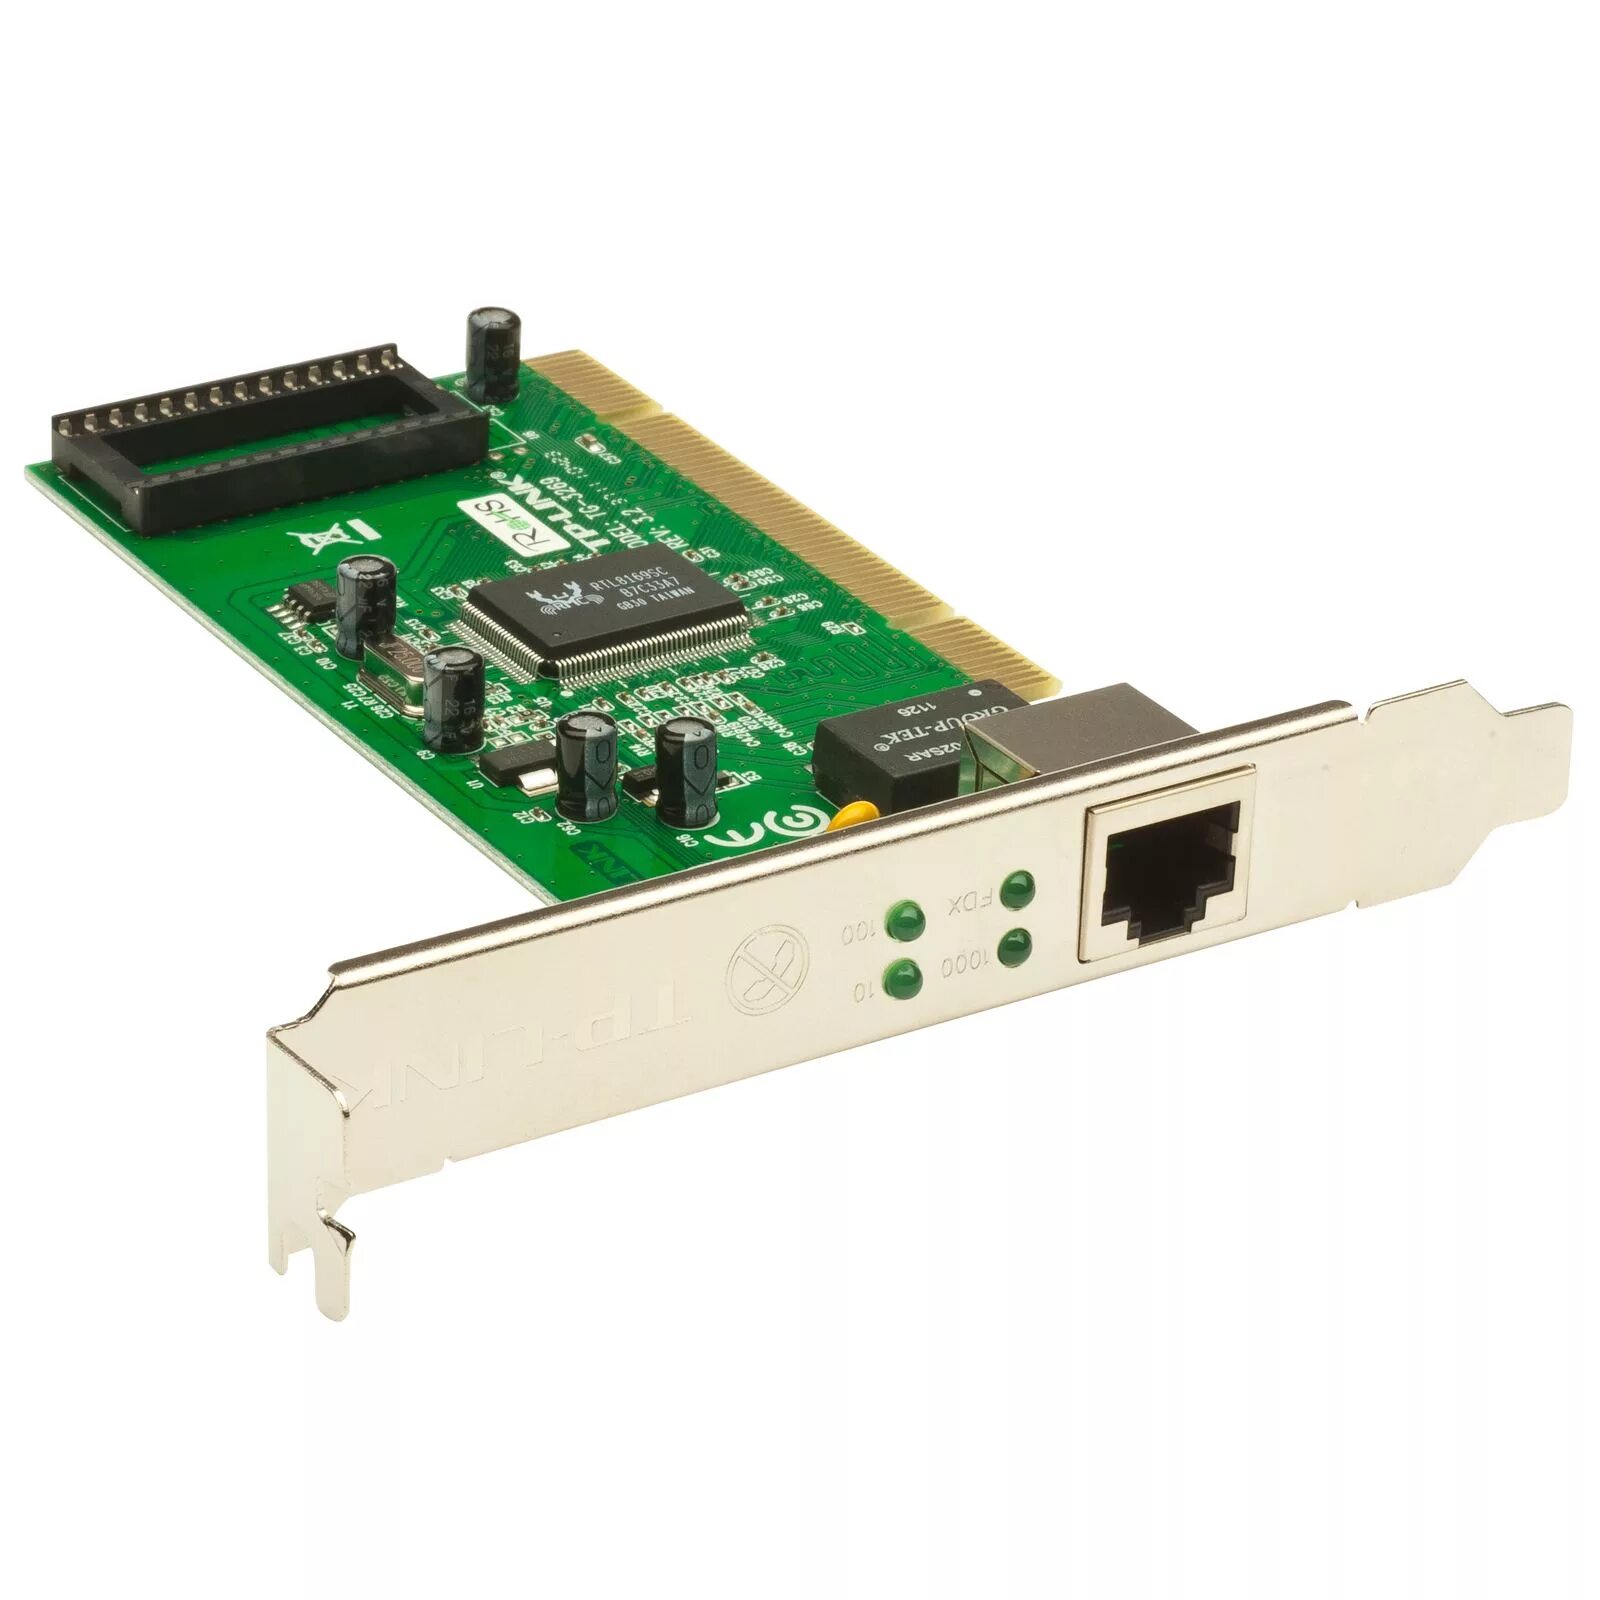 Сетевые карты расширения. Сетевой адаптер Gigabit Ethernet d-link DGE-528t RJ-45. Gigabit PCI Network Adapter TG-3269. Сетевая карта TP-link TG-3269. Сетевая карта TP-link TG-3269 10/100/1000 Mbps PCI.